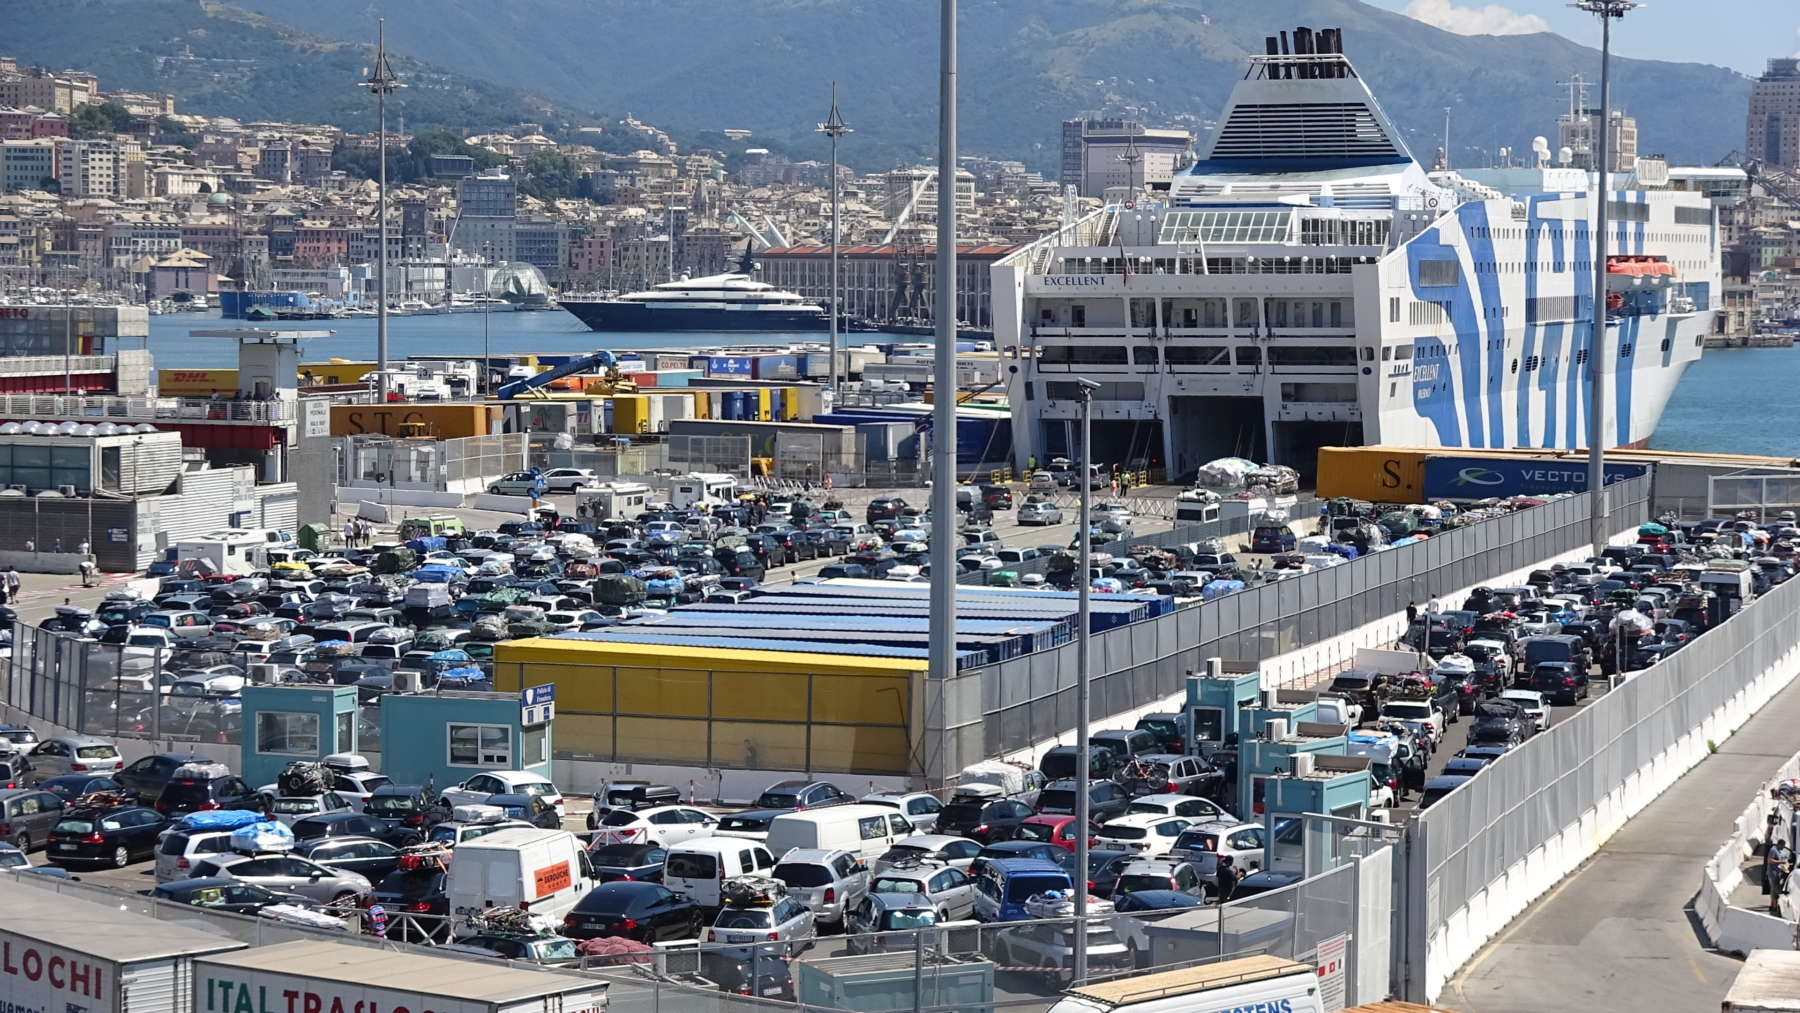 Genova, allargati i varchi portuali per sostenere l'assalto di turisti ai traghetti  